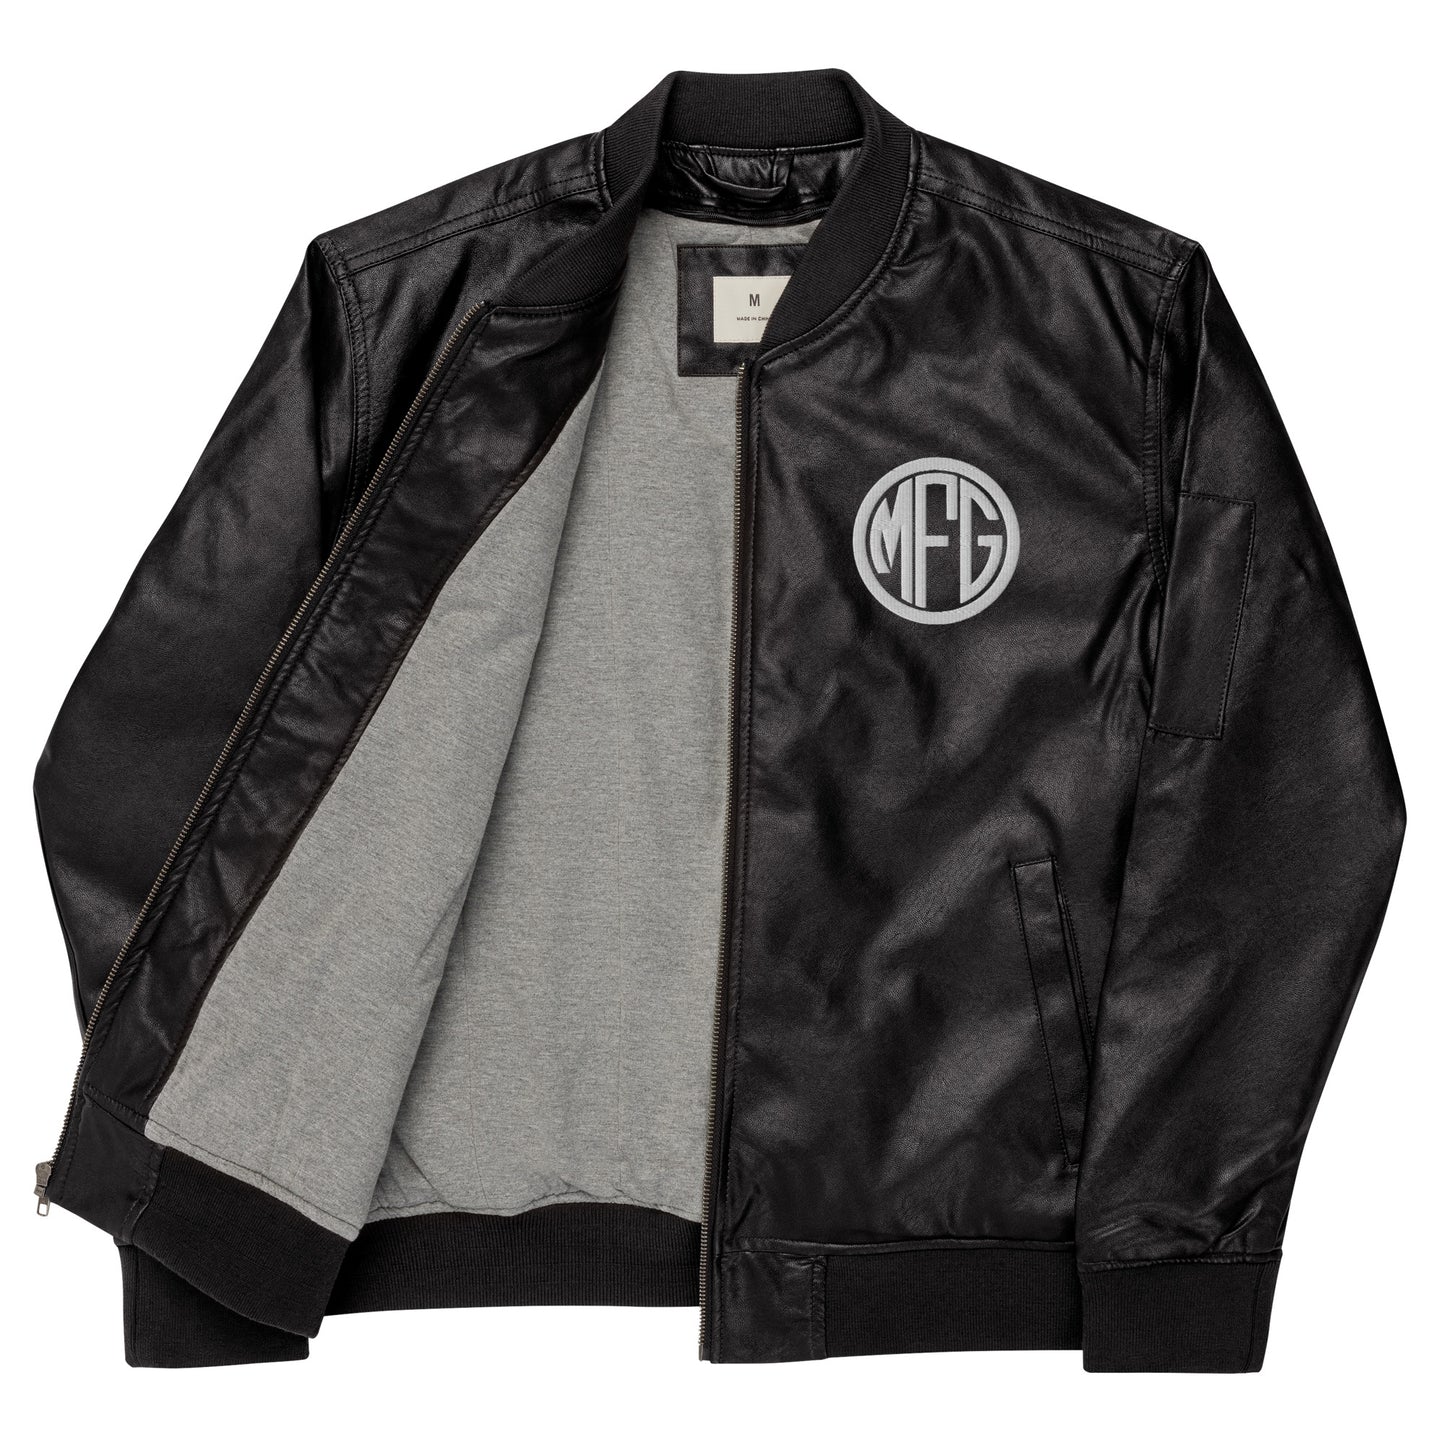 MFG Logo Leather Bomber Jacket